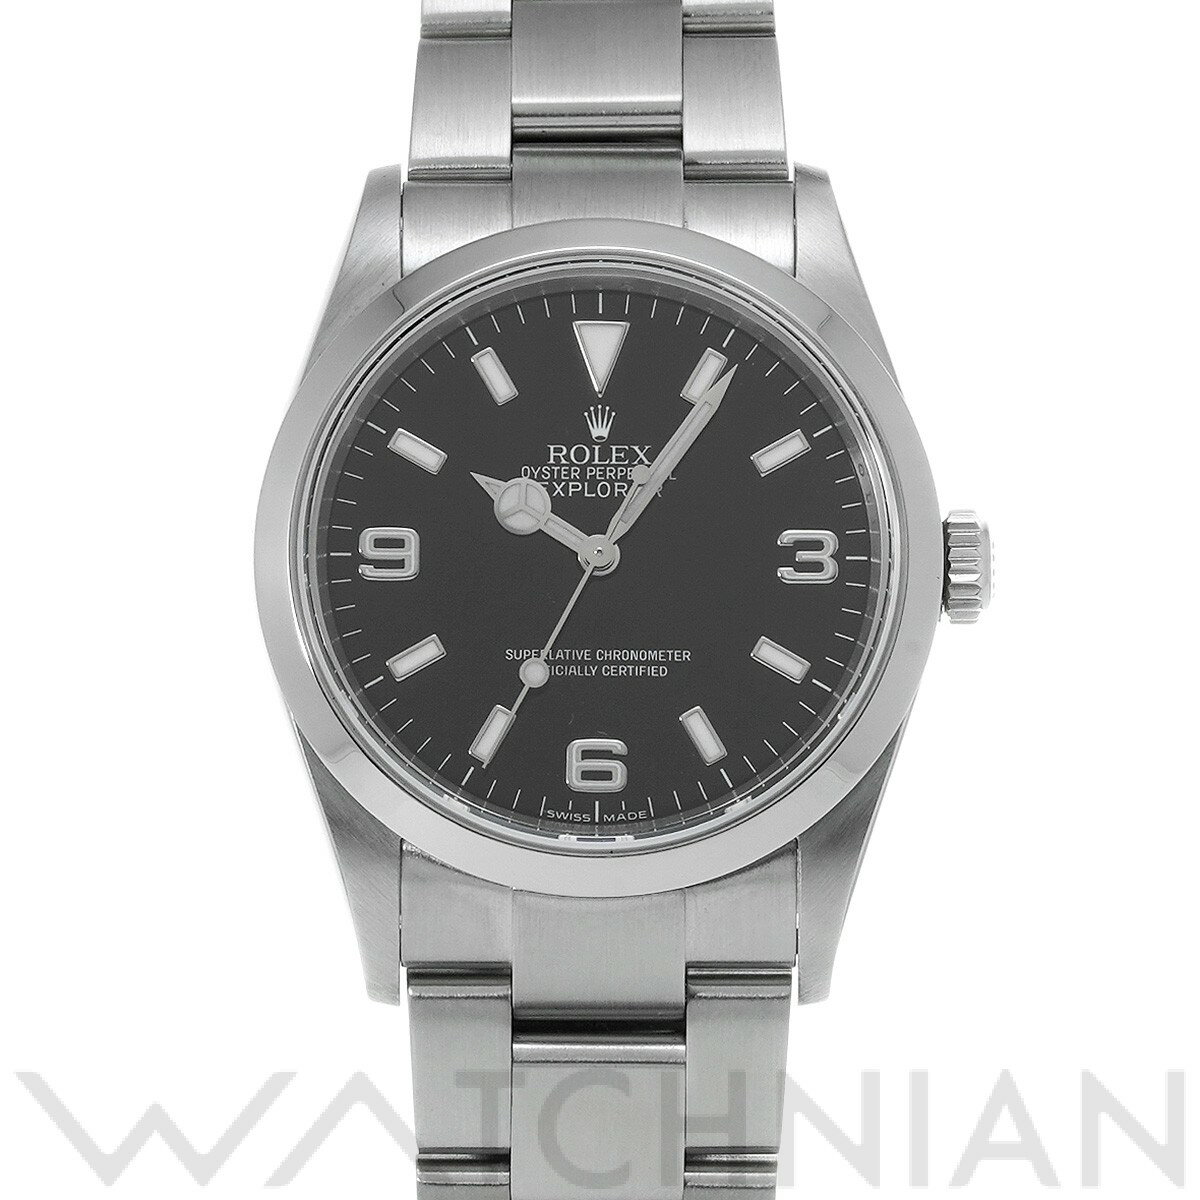 【ローン48回払い無金利】【中古】 ロレックス ROLEX エクスプローラー 114270 M番(2007年頃製造) ブラック メンズ 腕時計